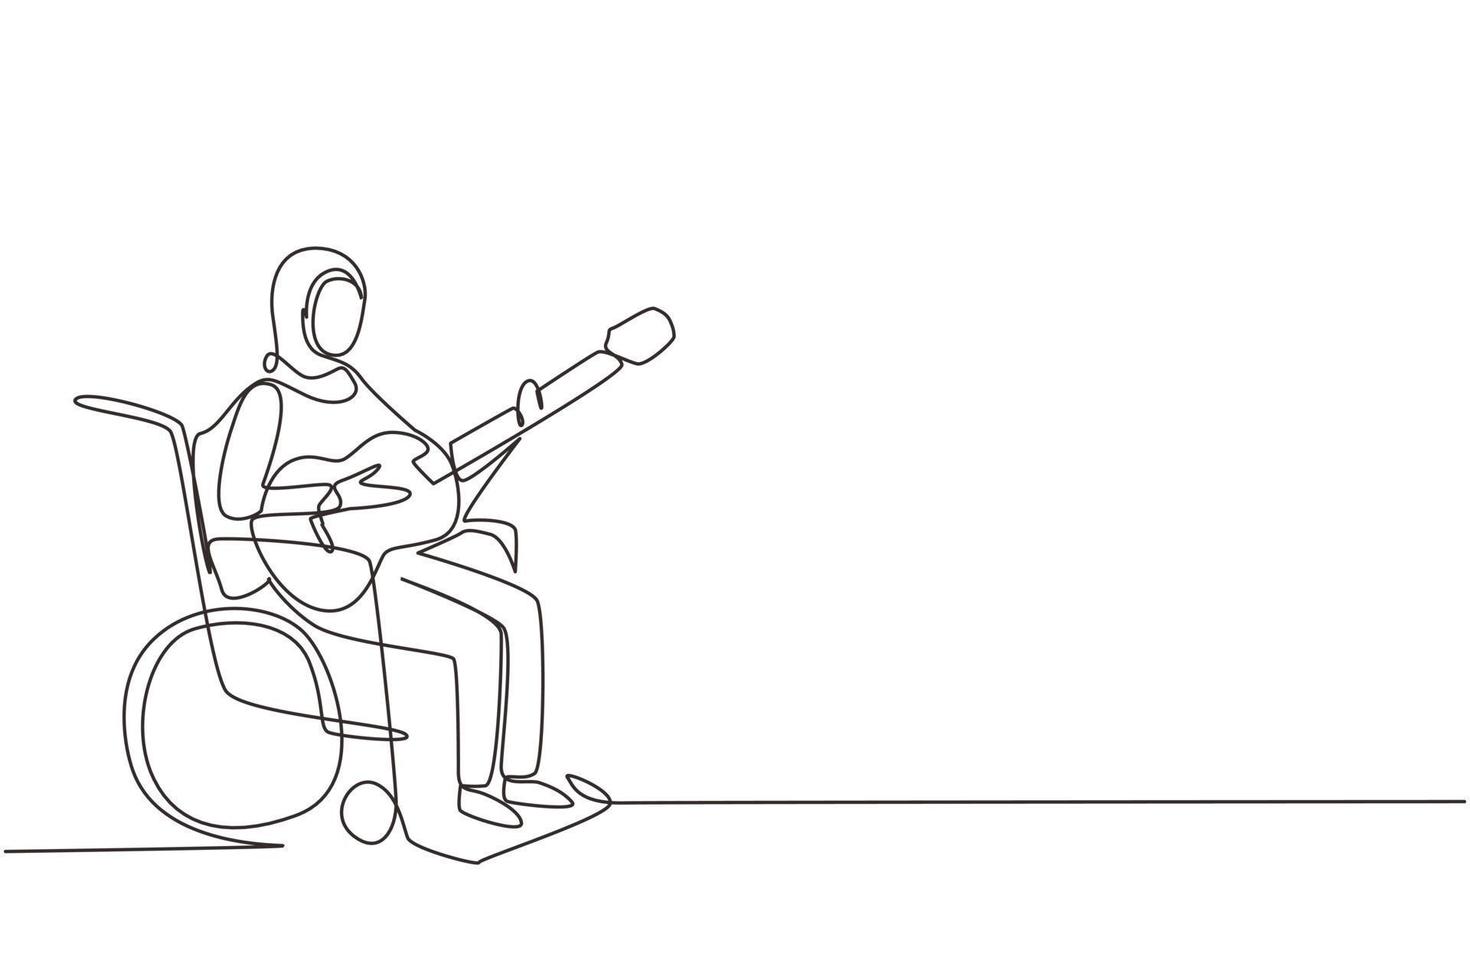 enkele doorlopende lijntekening jonge arabische vrouw zit in een rolstoel met akoestische gitaar, speel muziek, zing een lied. fysiek niet in staat. patiënt in het revalidatiecentrum. één lijn tekenen ontwerp vectorillustratie vector